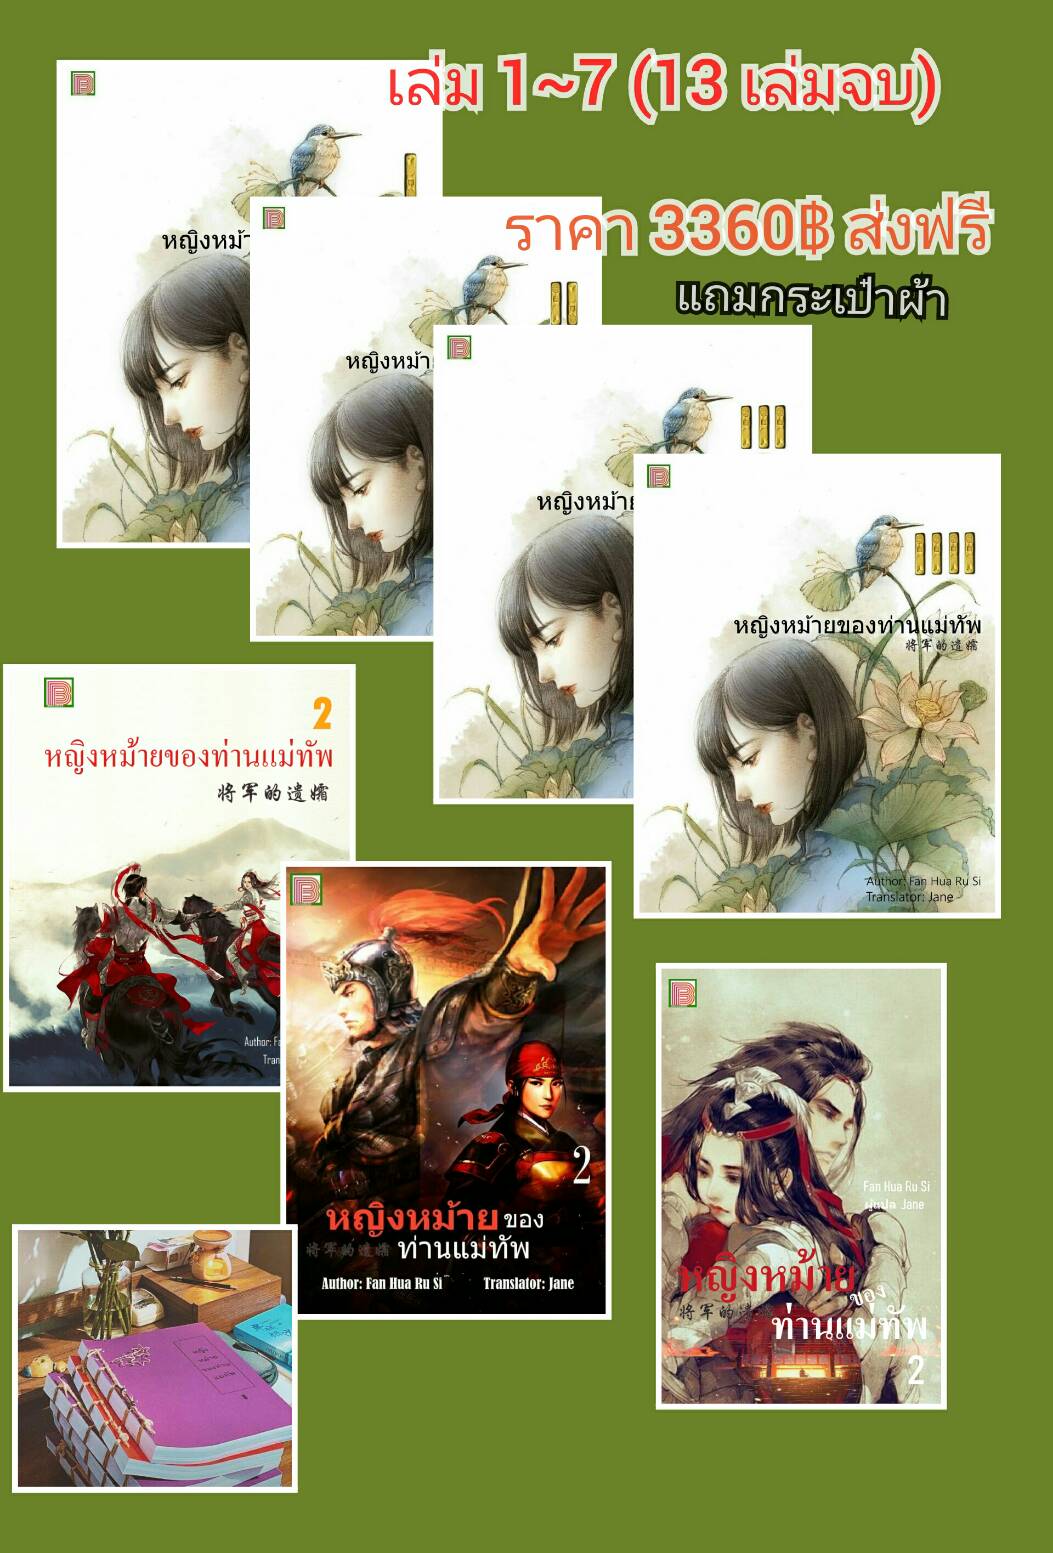 หญิงหม้ายของท่านแม่ทัพ เล่ม 1-7 ( 13 เล่มจบ ) / Fan Hua Ru Si : Jane แปล / ใหม่ ทำมือ ส่งฟรี + แถมกระเป๋าผ้า